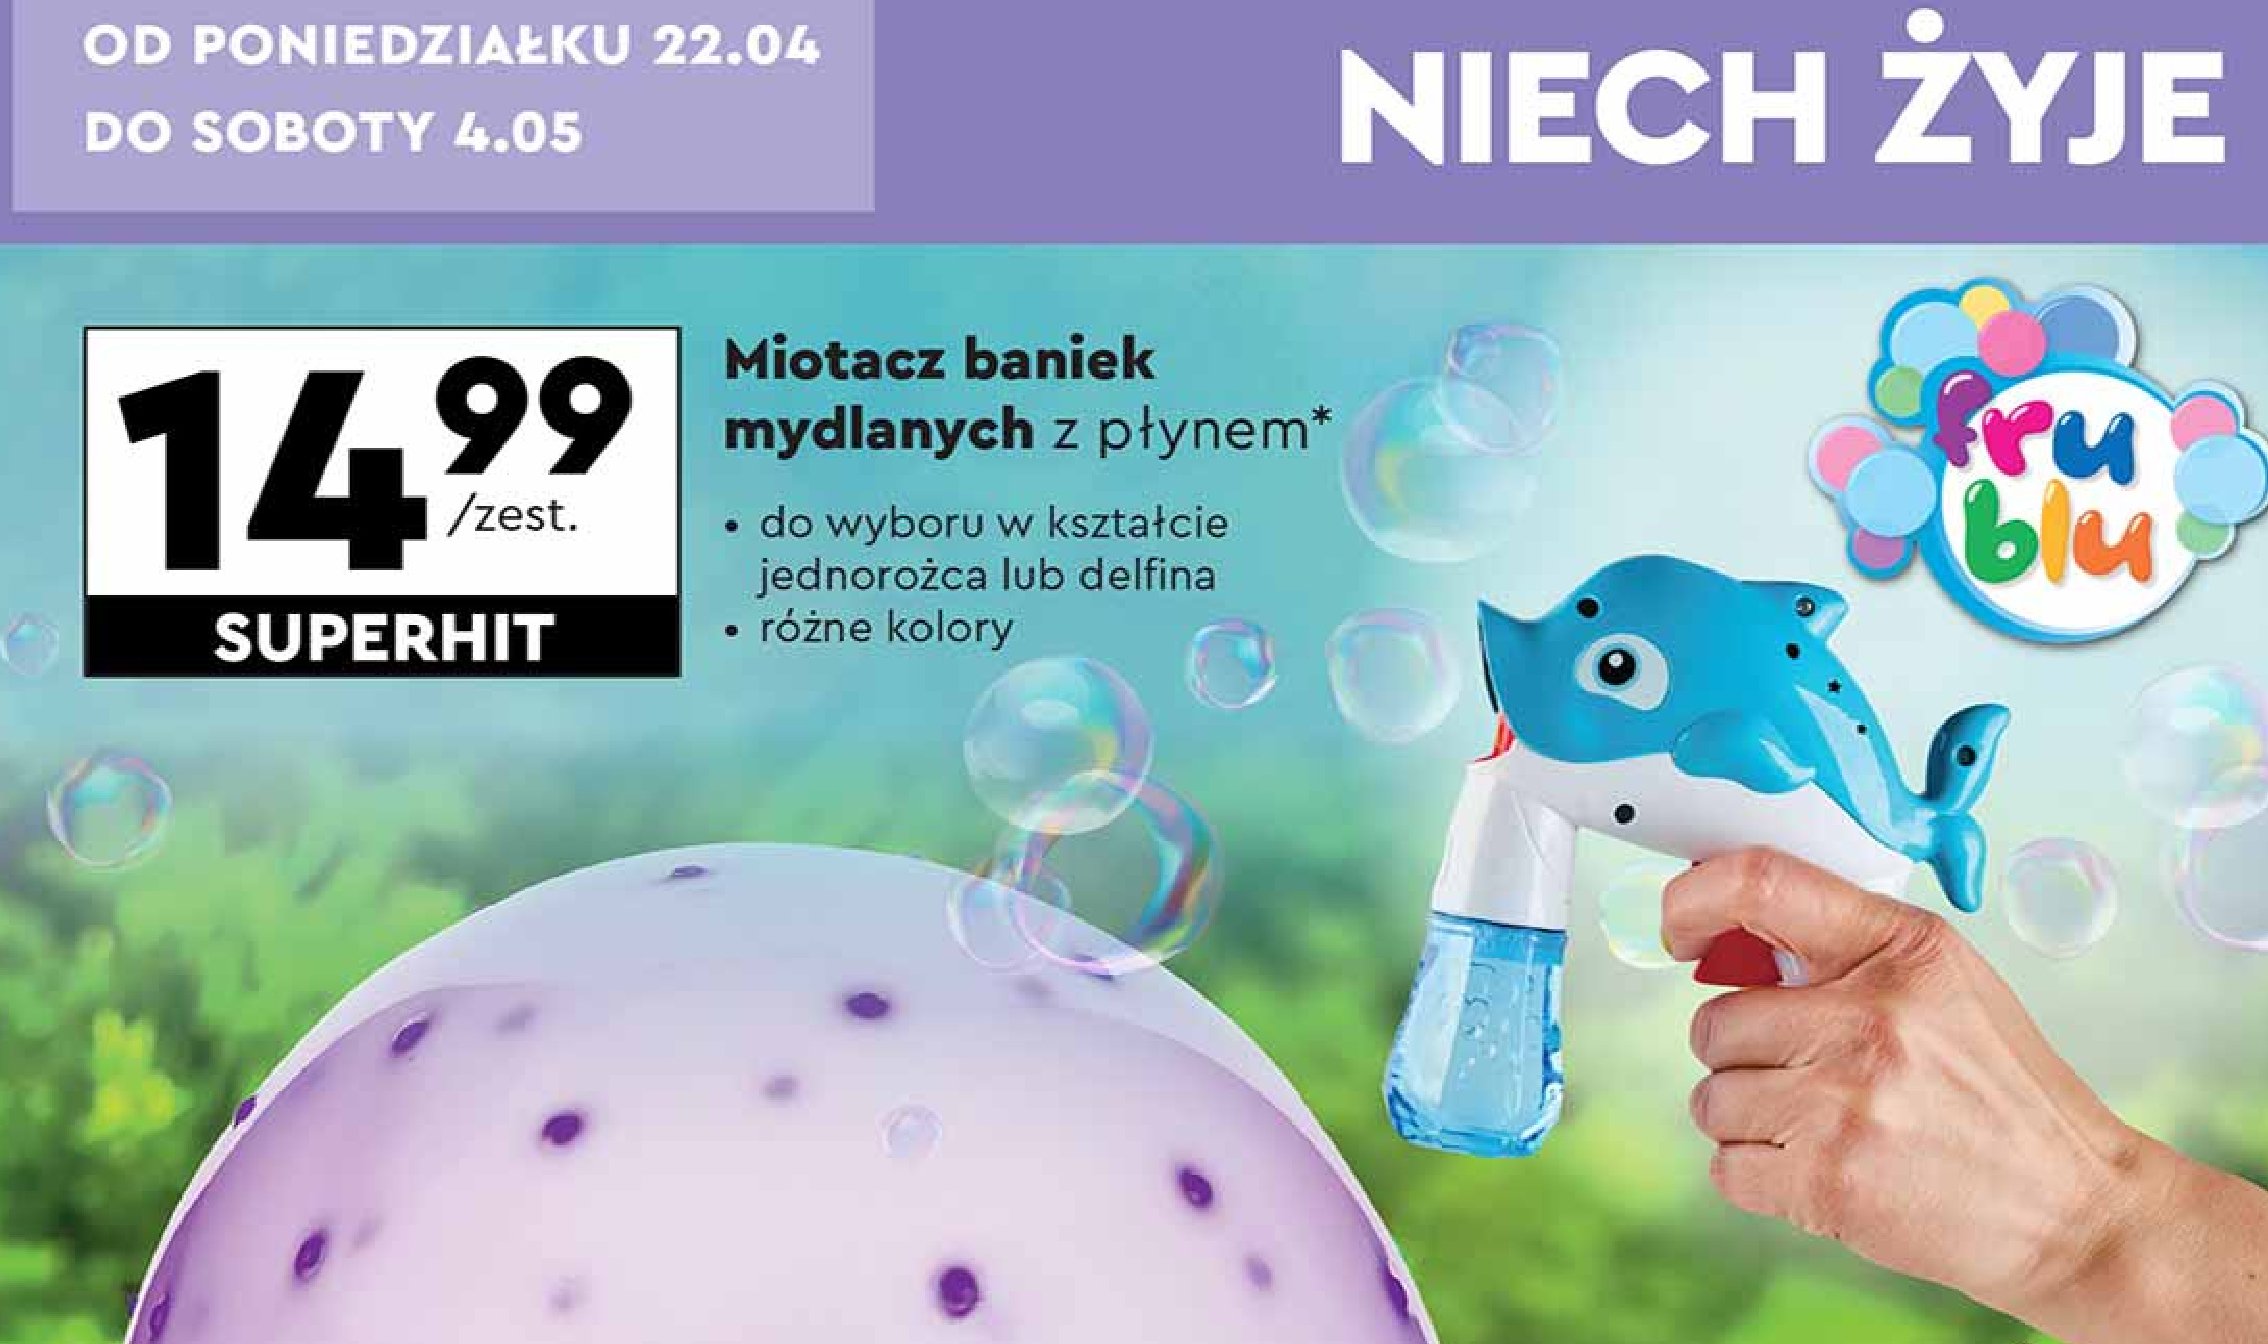 Miotacz baniek mydlanych z płynem - jednorożec Fru blu promocja w Biedronka